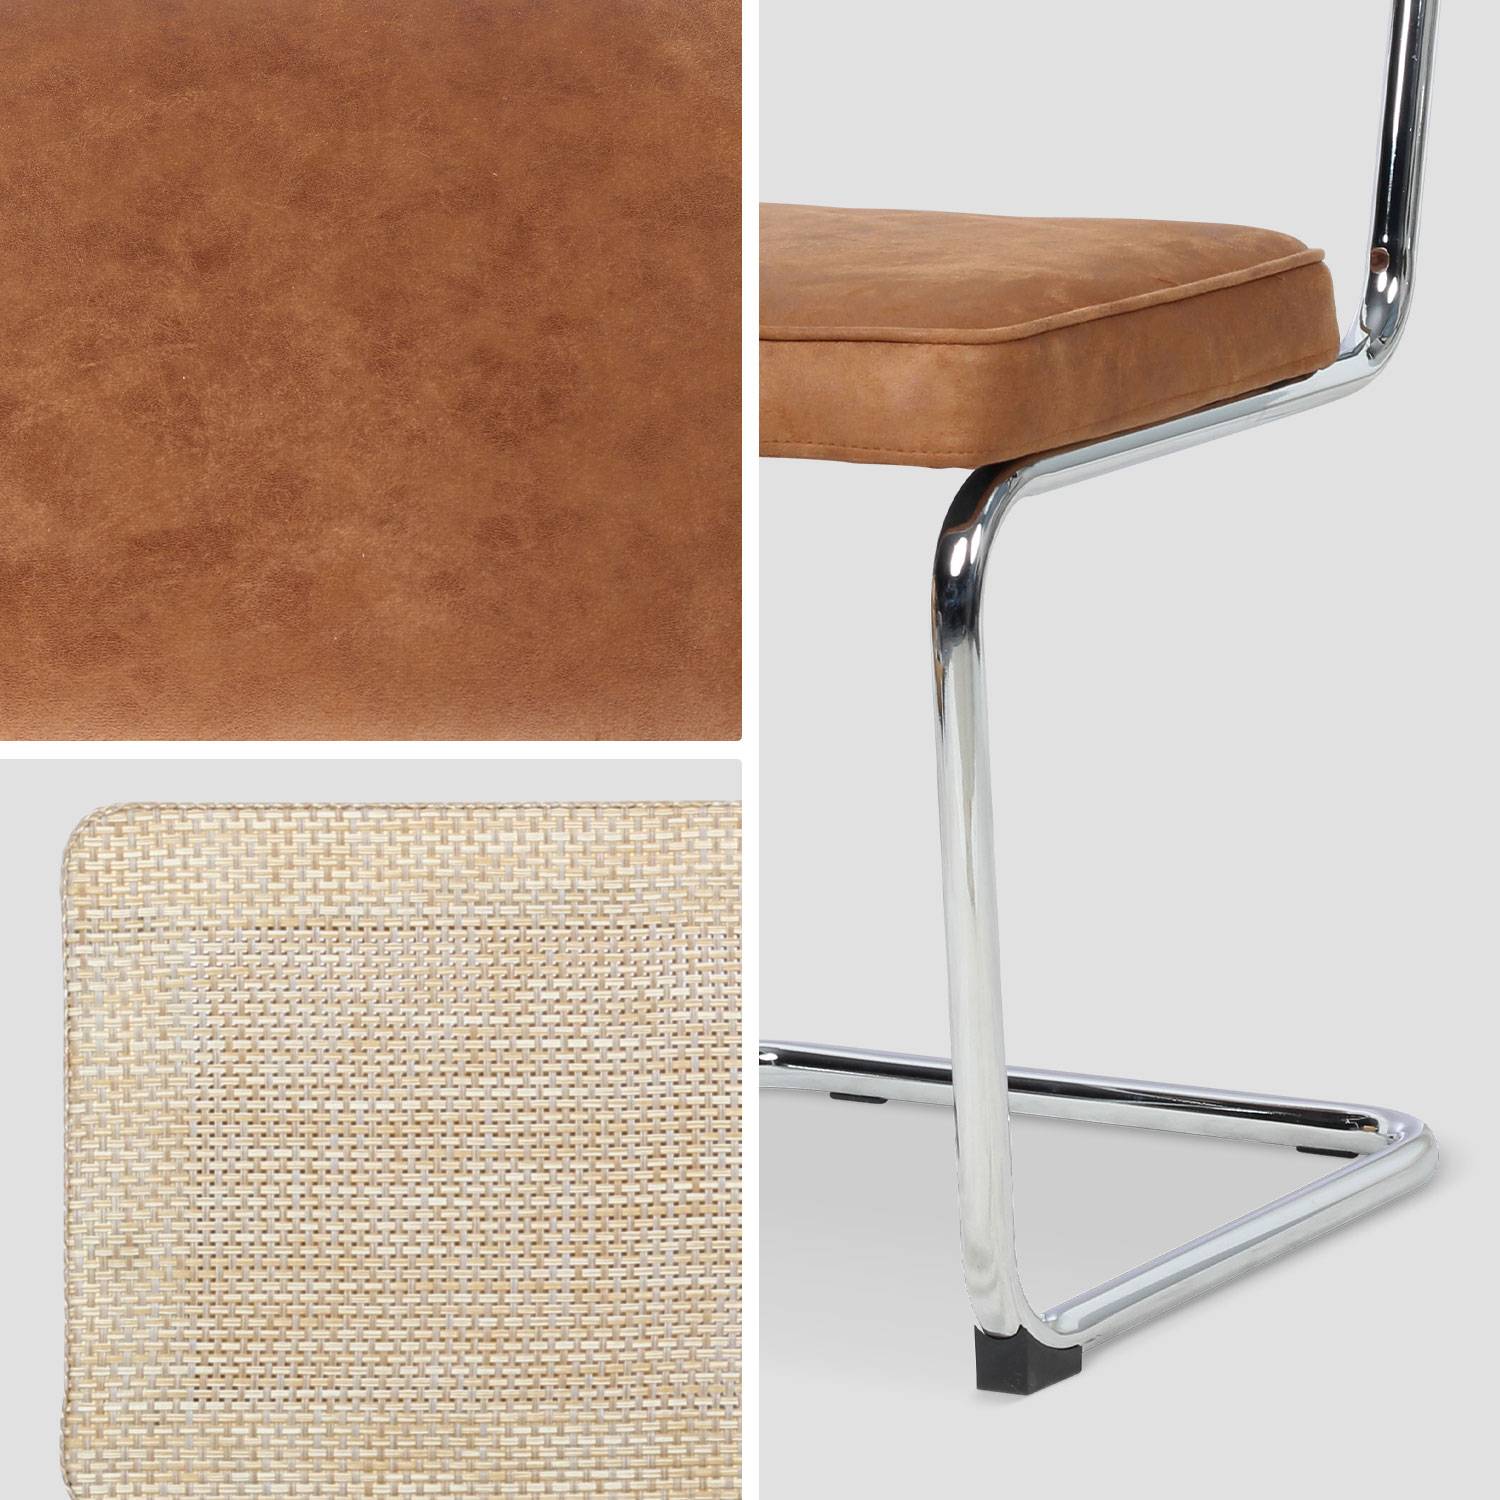 2 chaises cantilever - Maja - tissu marron clair et résine effet rotin, 46 x 54,5 x 84,5cm   Photo6